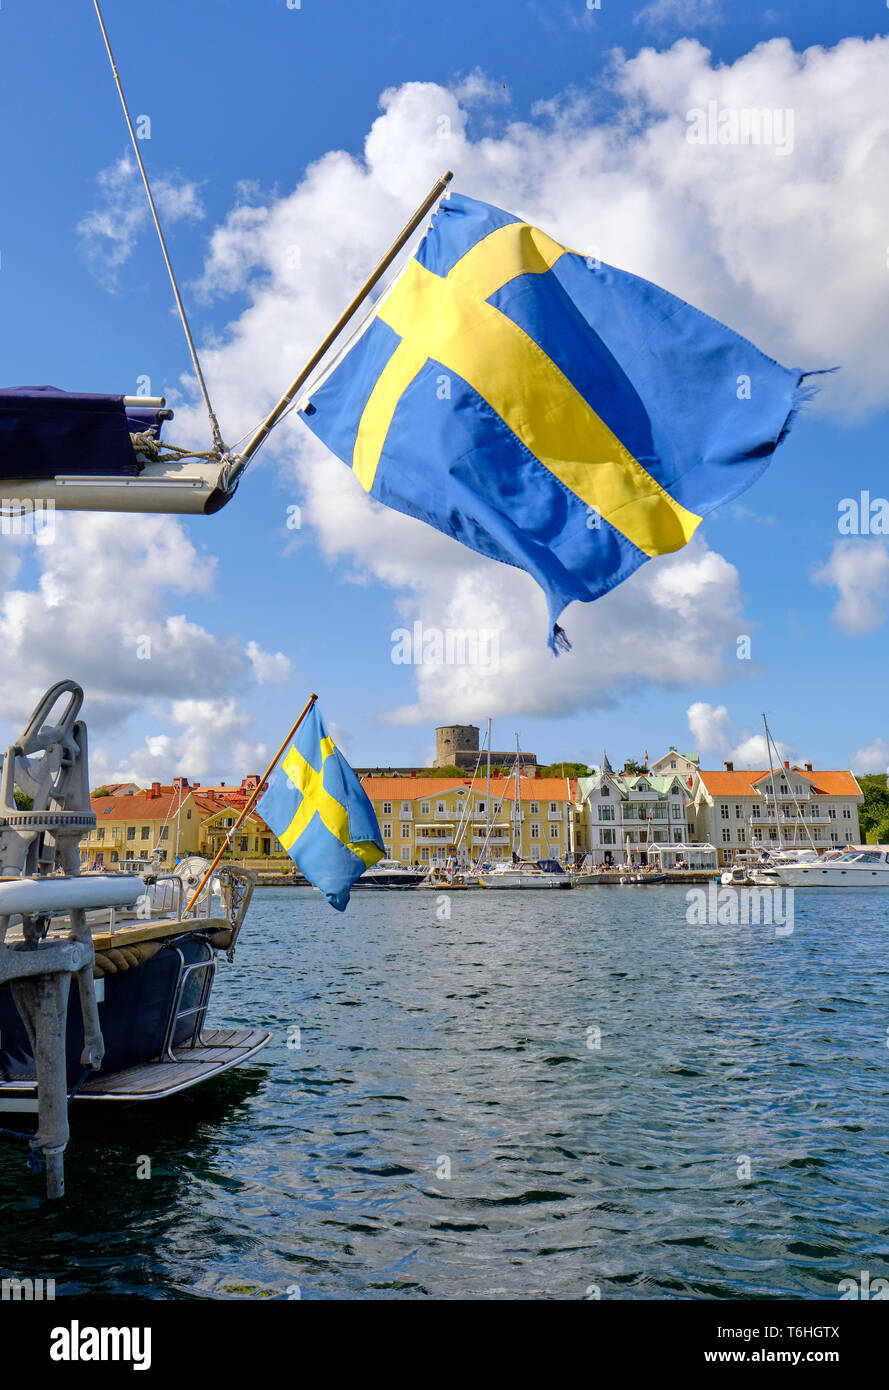 Schwedische Flaggen fliegen bei Marstrand während der jährlichen Boat Show im August in Kungälv/Gemeinde, Västra Götaland Grafschaft Bohuslan Küste Schweden Stockfoto